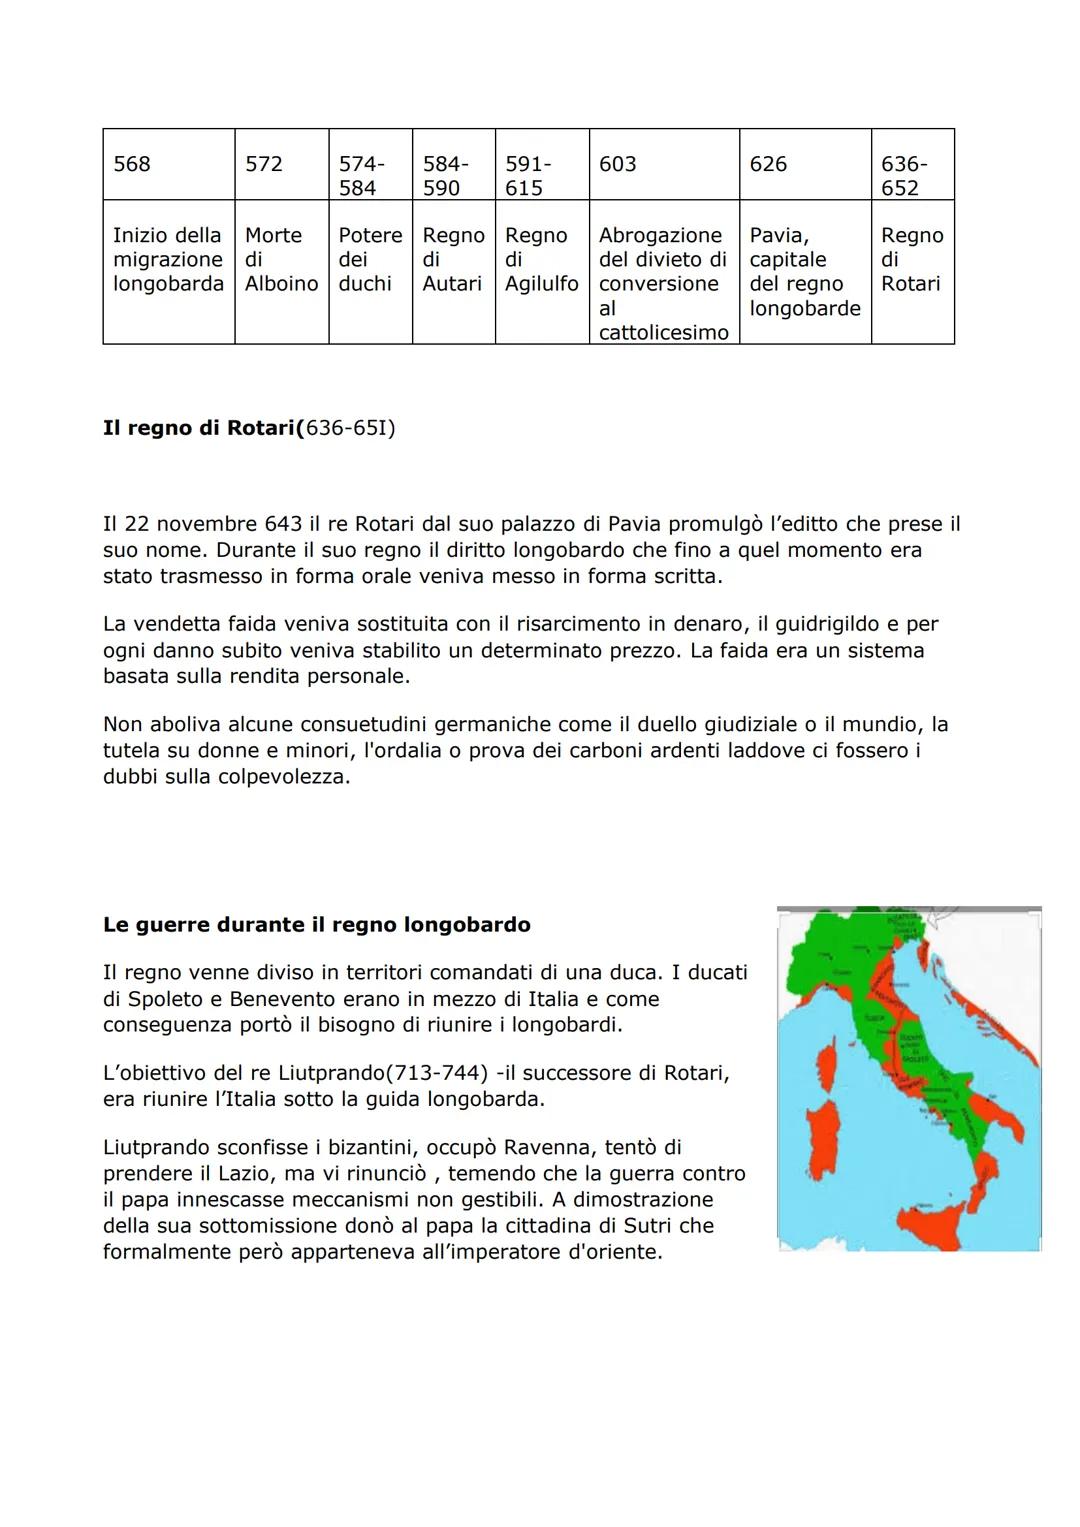 LA GUERRA TRA I FRANCHI E I LONGOBARDI IN ITALIA (574-773)
I longobardi conquistano parte dell'Italia
Dopo la guerra di Giustiniano contro g